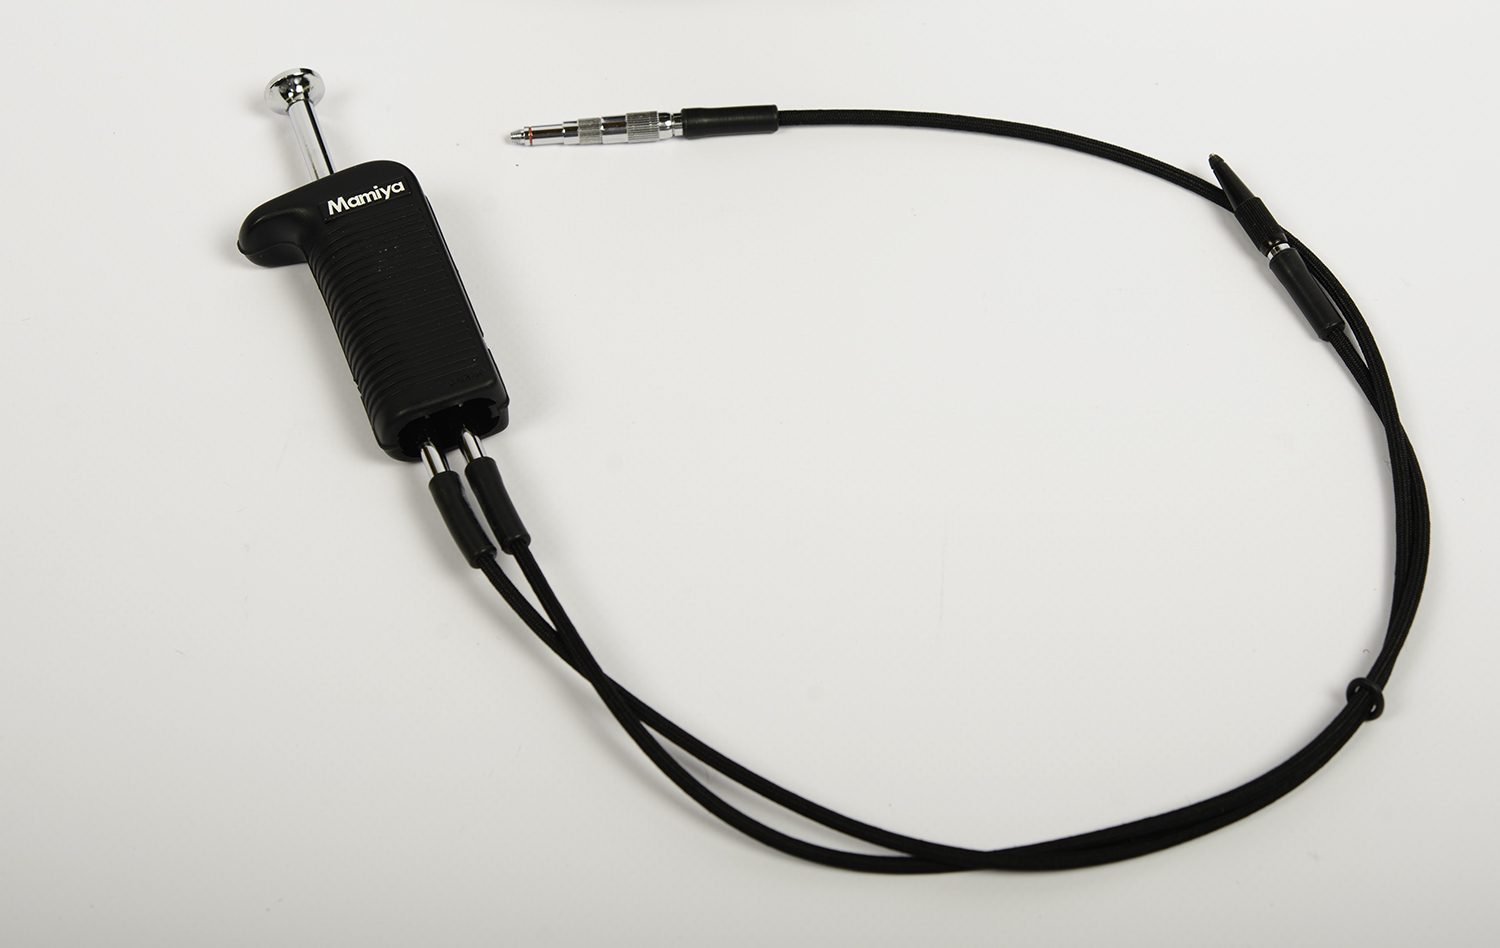 Mamiya RZ67 - Mamiya dual release cable